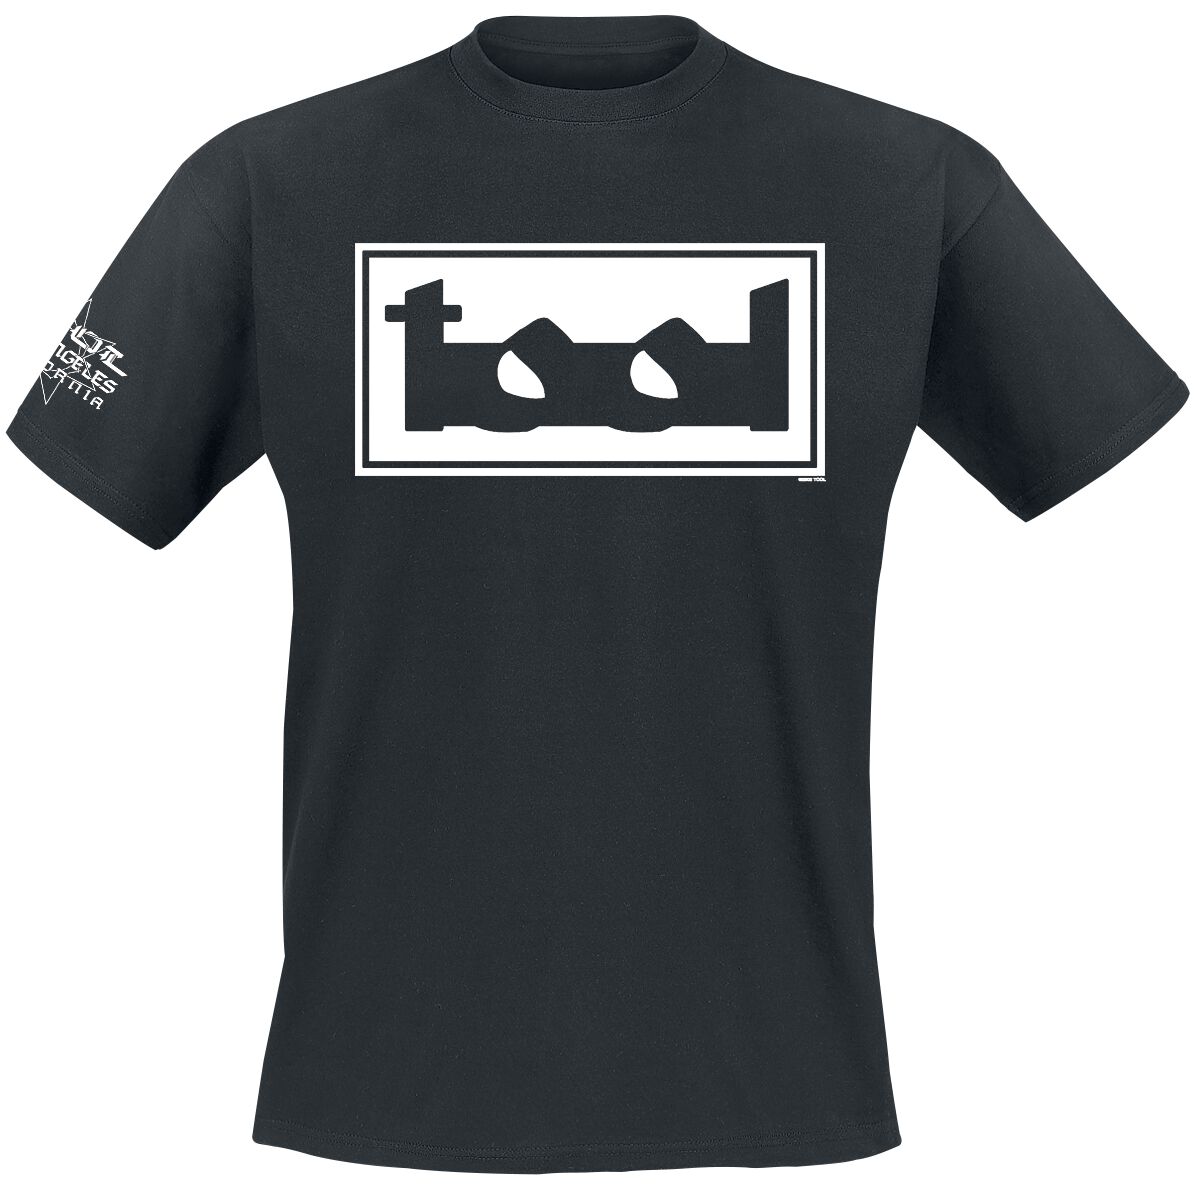 Tool T-Shirt - Wirebox - S bis XXL - für Männer - Größe M - schwarz  - Lizenziertes Merchandise! von Tool